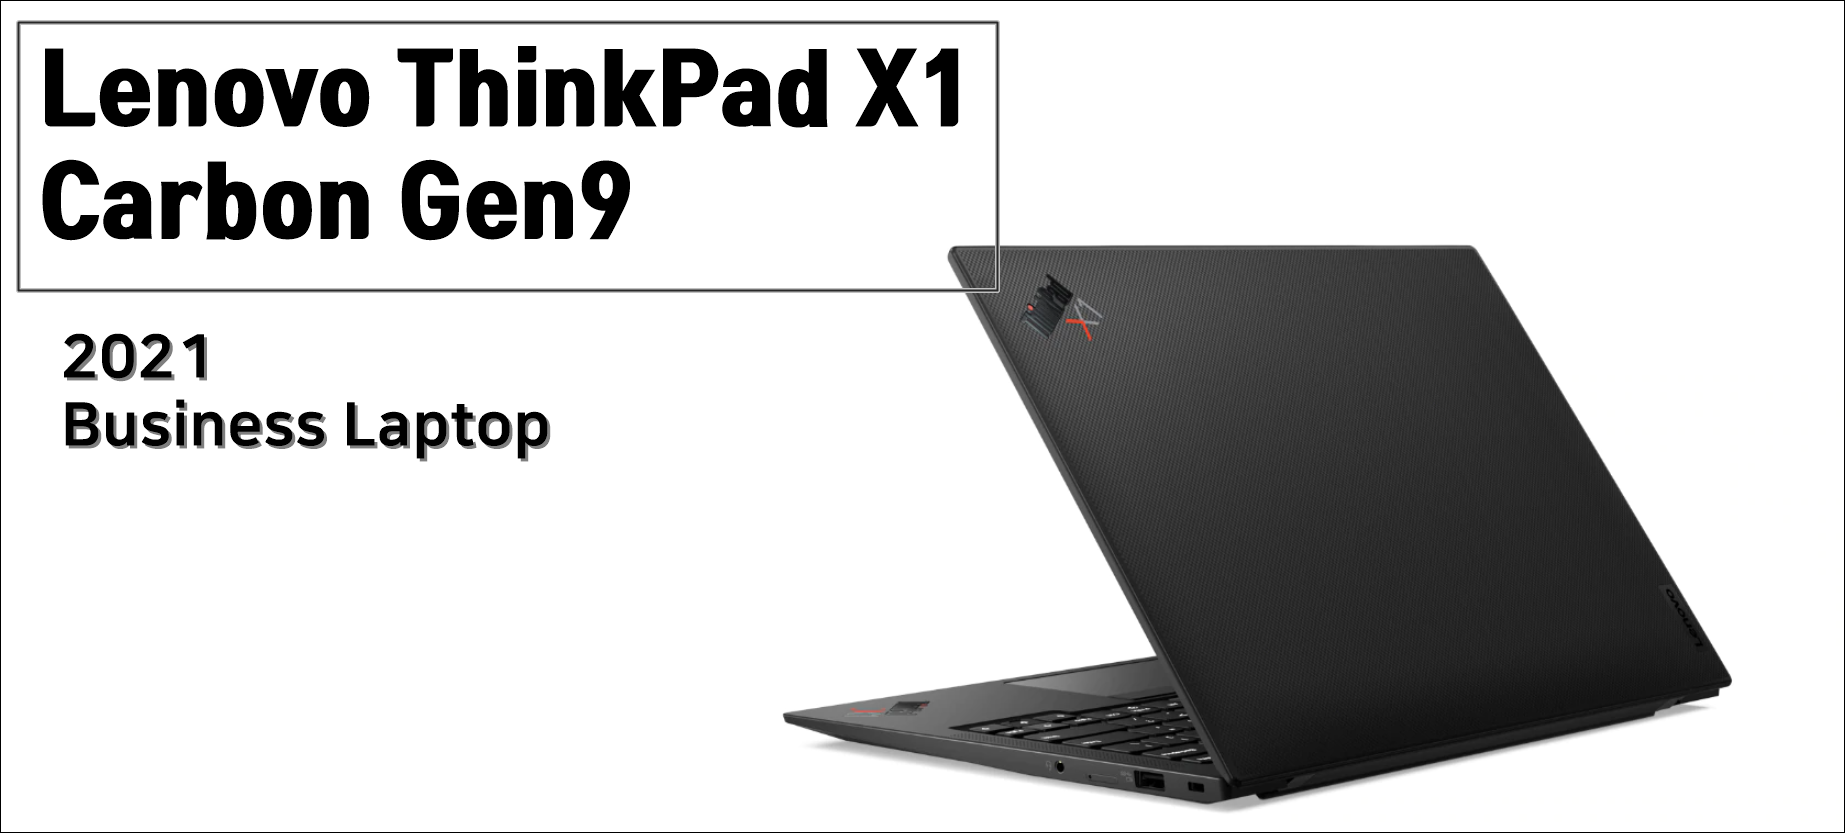 레노버 씽크패드 X1 카본 9세대 할인코드 Thinkpad X1 Carbon Gen 9